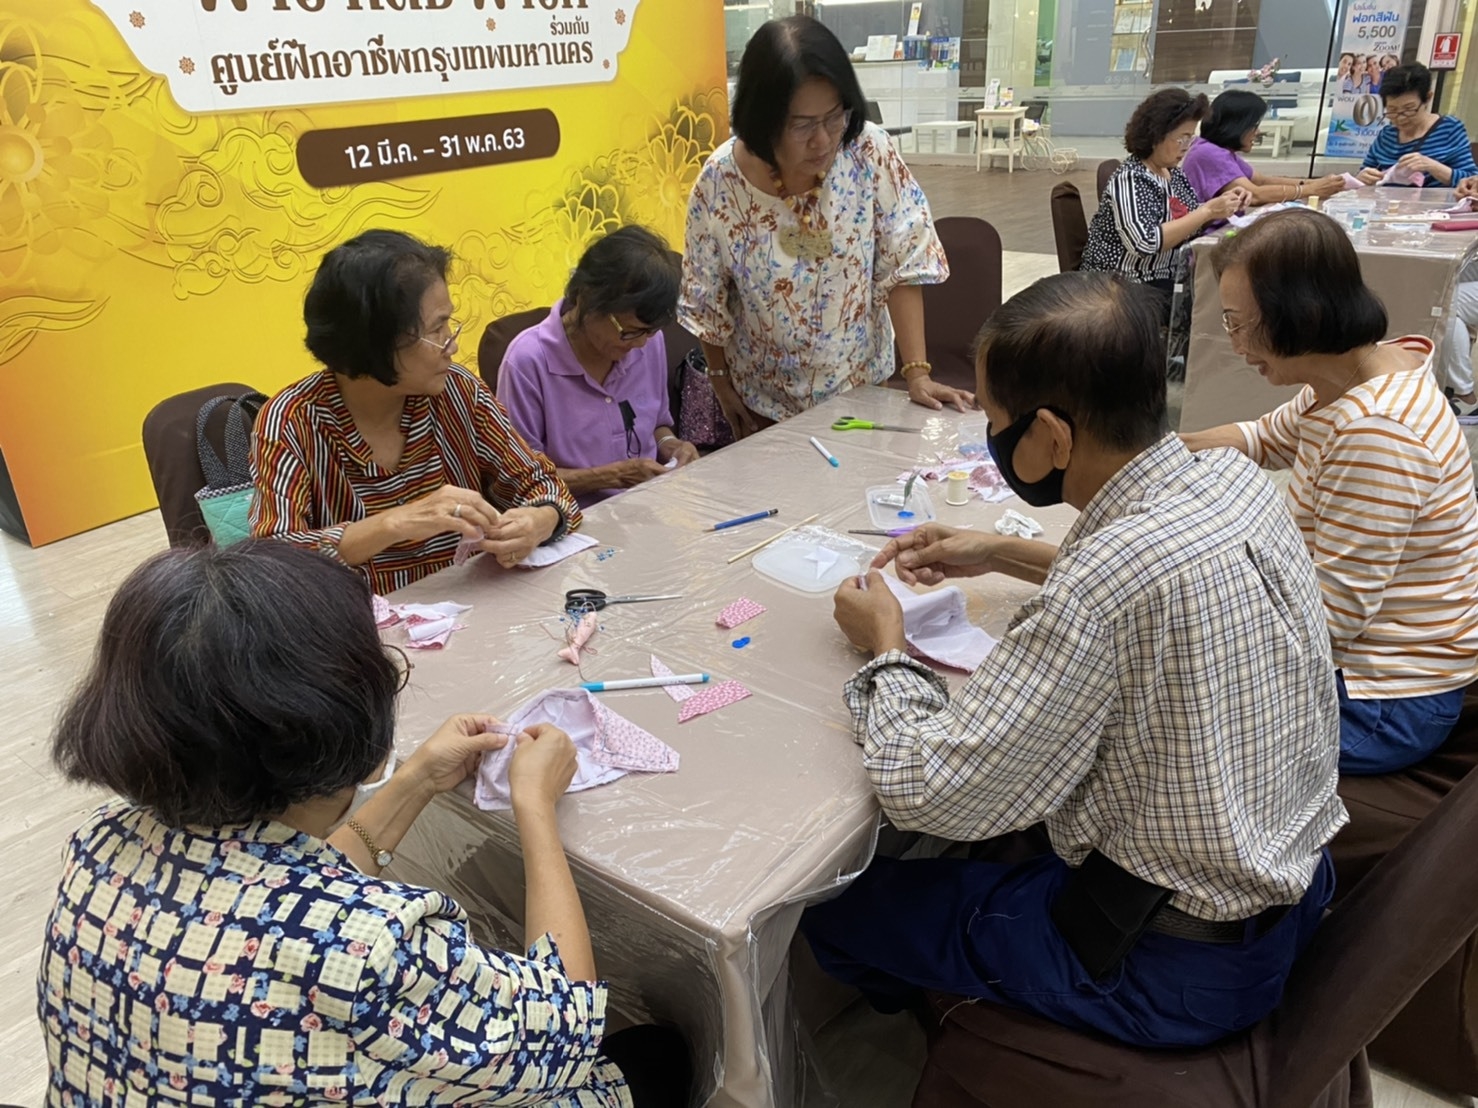 ศูนย์การค้าเครือเอ็ม บี เค ร่วมกับ ศูนย์ฝึกอาชีพกรุงเทพมหานคร สอนทำหน้ากากอนามัยแบบผ้า ส่งมอบความห่วยใย ใส่ใจสุขอนามัยของคนไทย รับมือโควิด-19